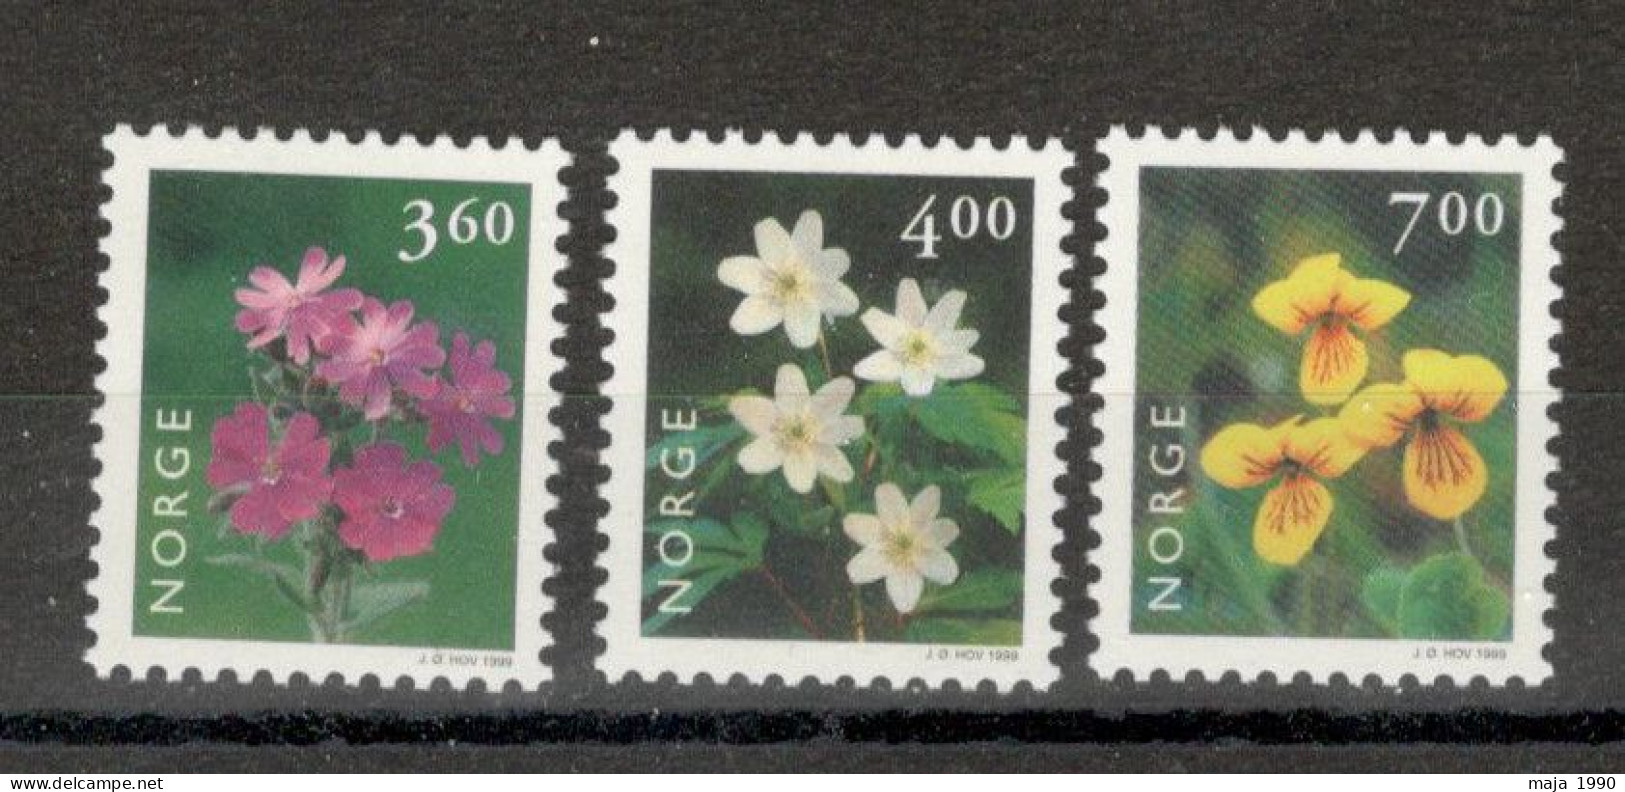 NORWAY - MNH SET - FLORA - FLOWERS - Mi.No. 1303/05 - 1999. - Ungebraucht